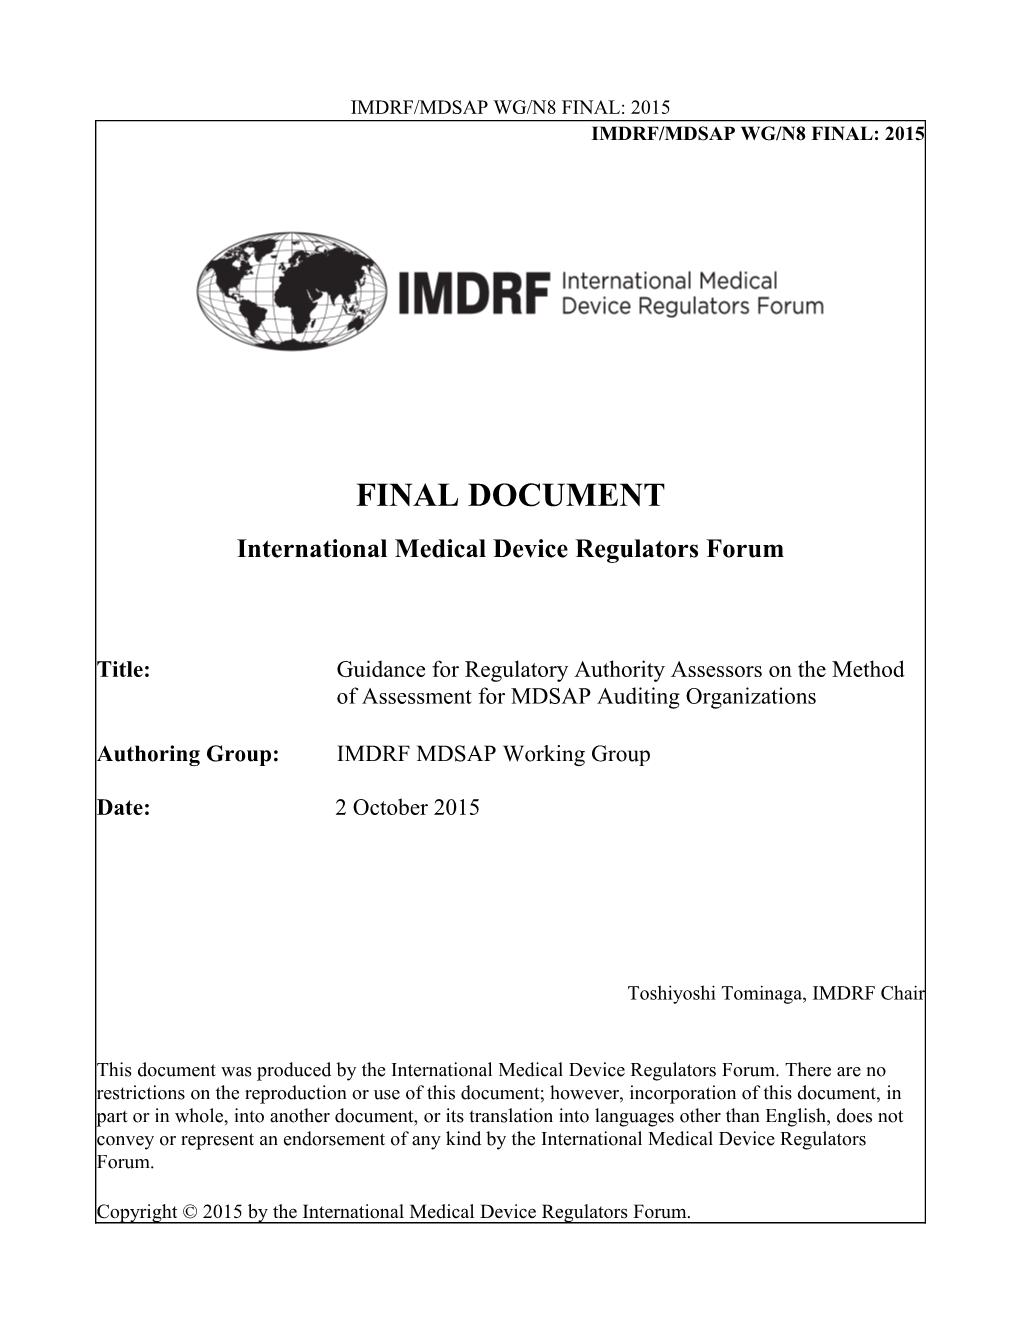 IMDRF/MDSAP WG/N8 FINAL: 2015 - Guidance for Regulatory Authority Assessors on the Method